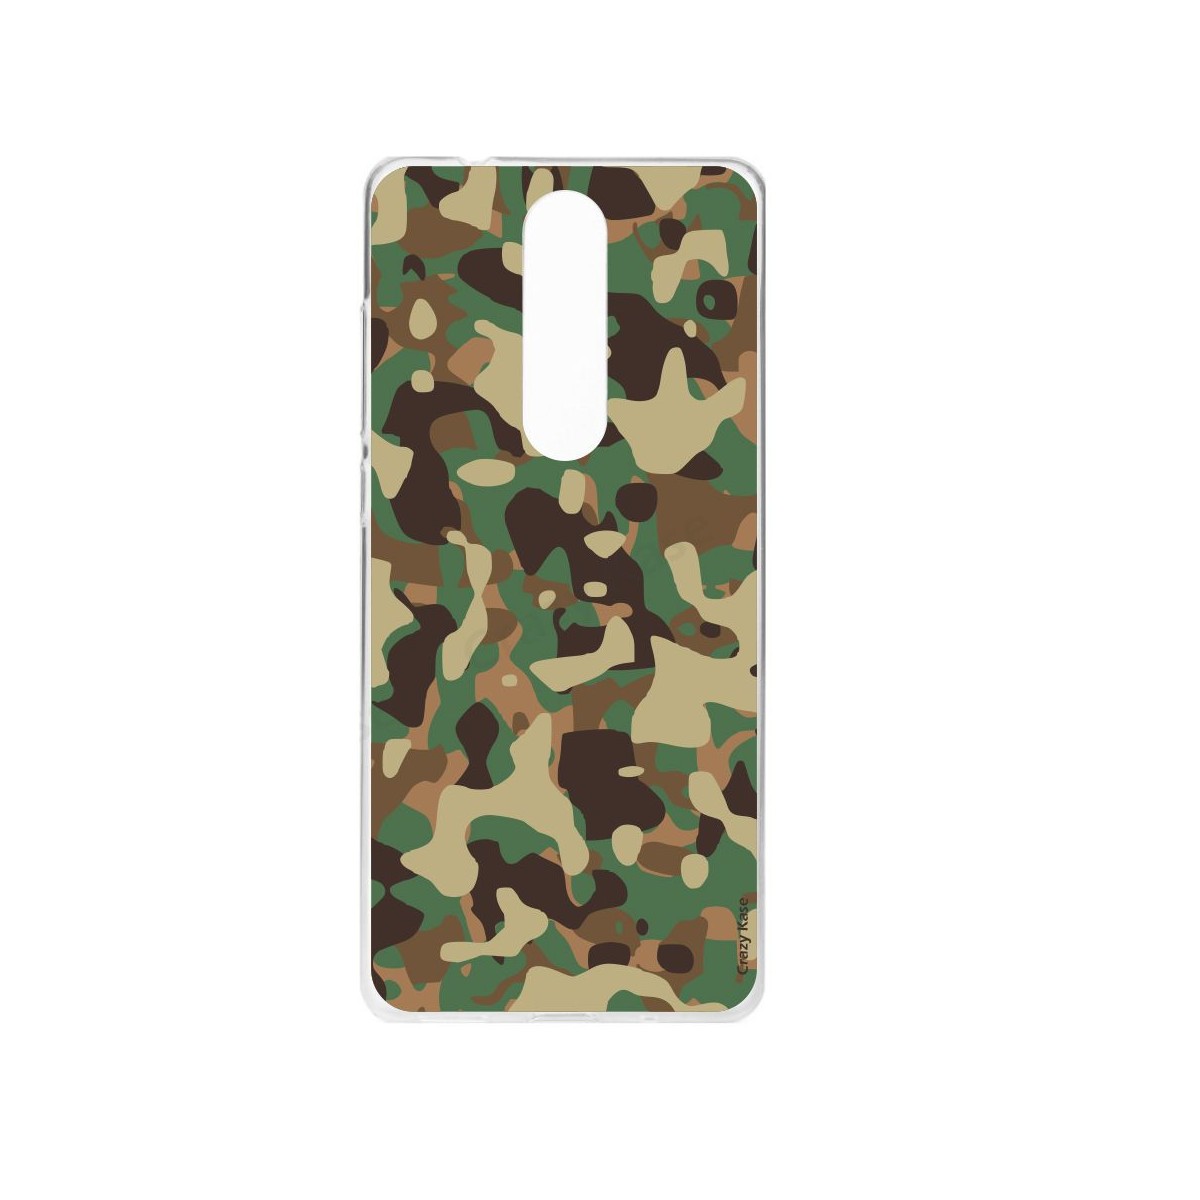 Coque Nokia 5.1 souple motif Camouflage militaire - Crazy Kase